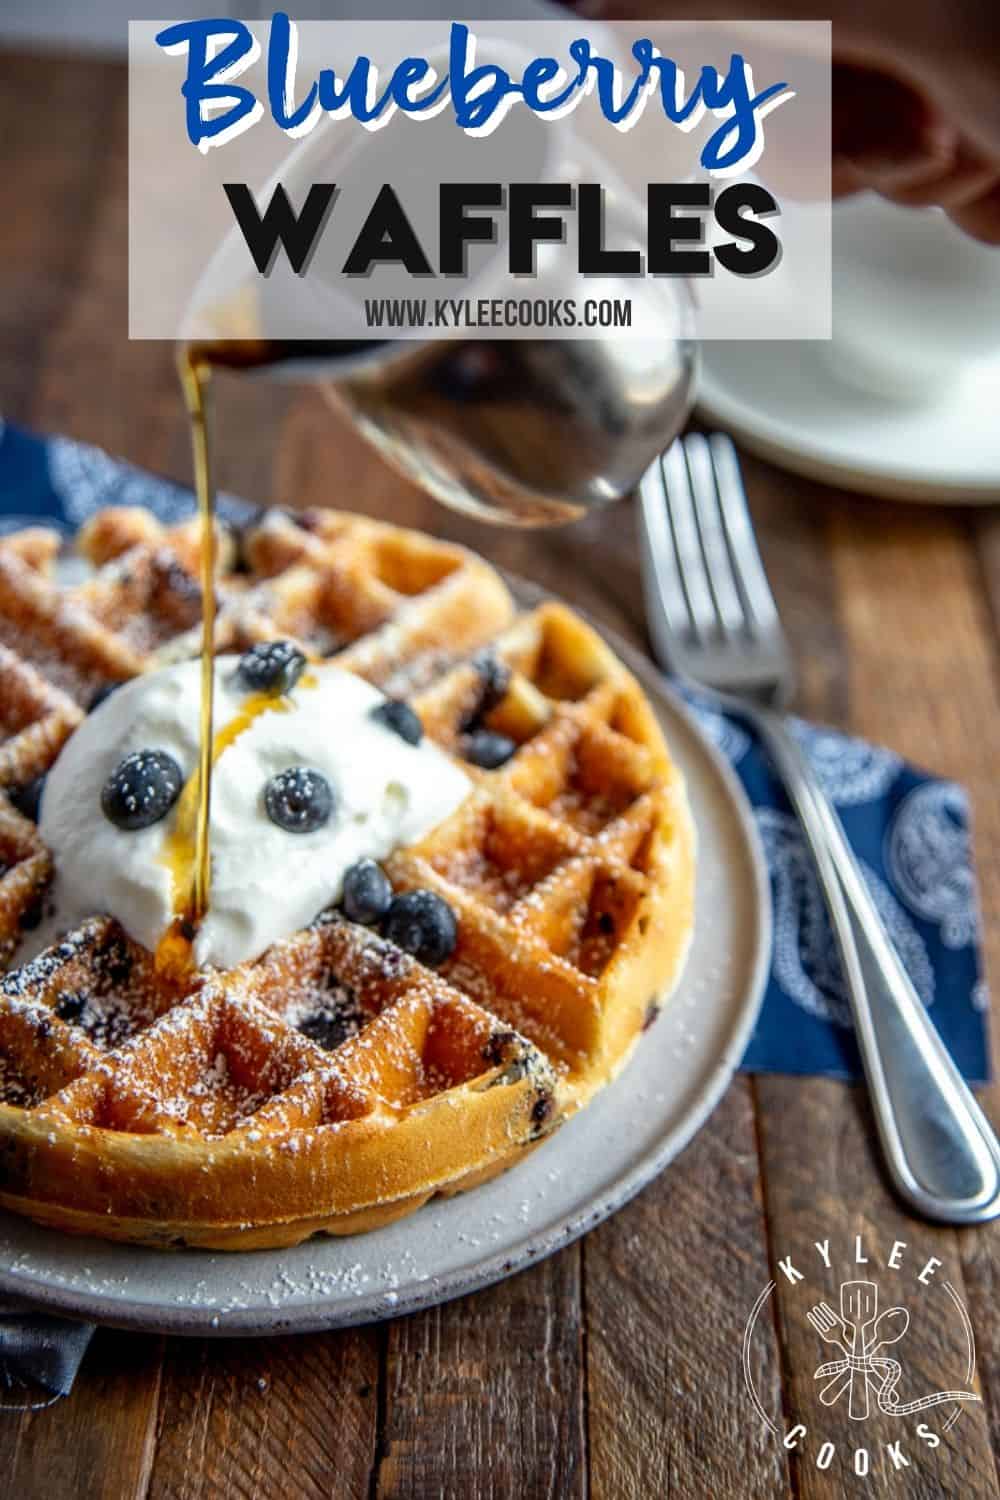 https://www.kyleecooks.com/wp-content/uploads/2019/05/Blueberry-Waffles-1000x1500-PIN.jpg